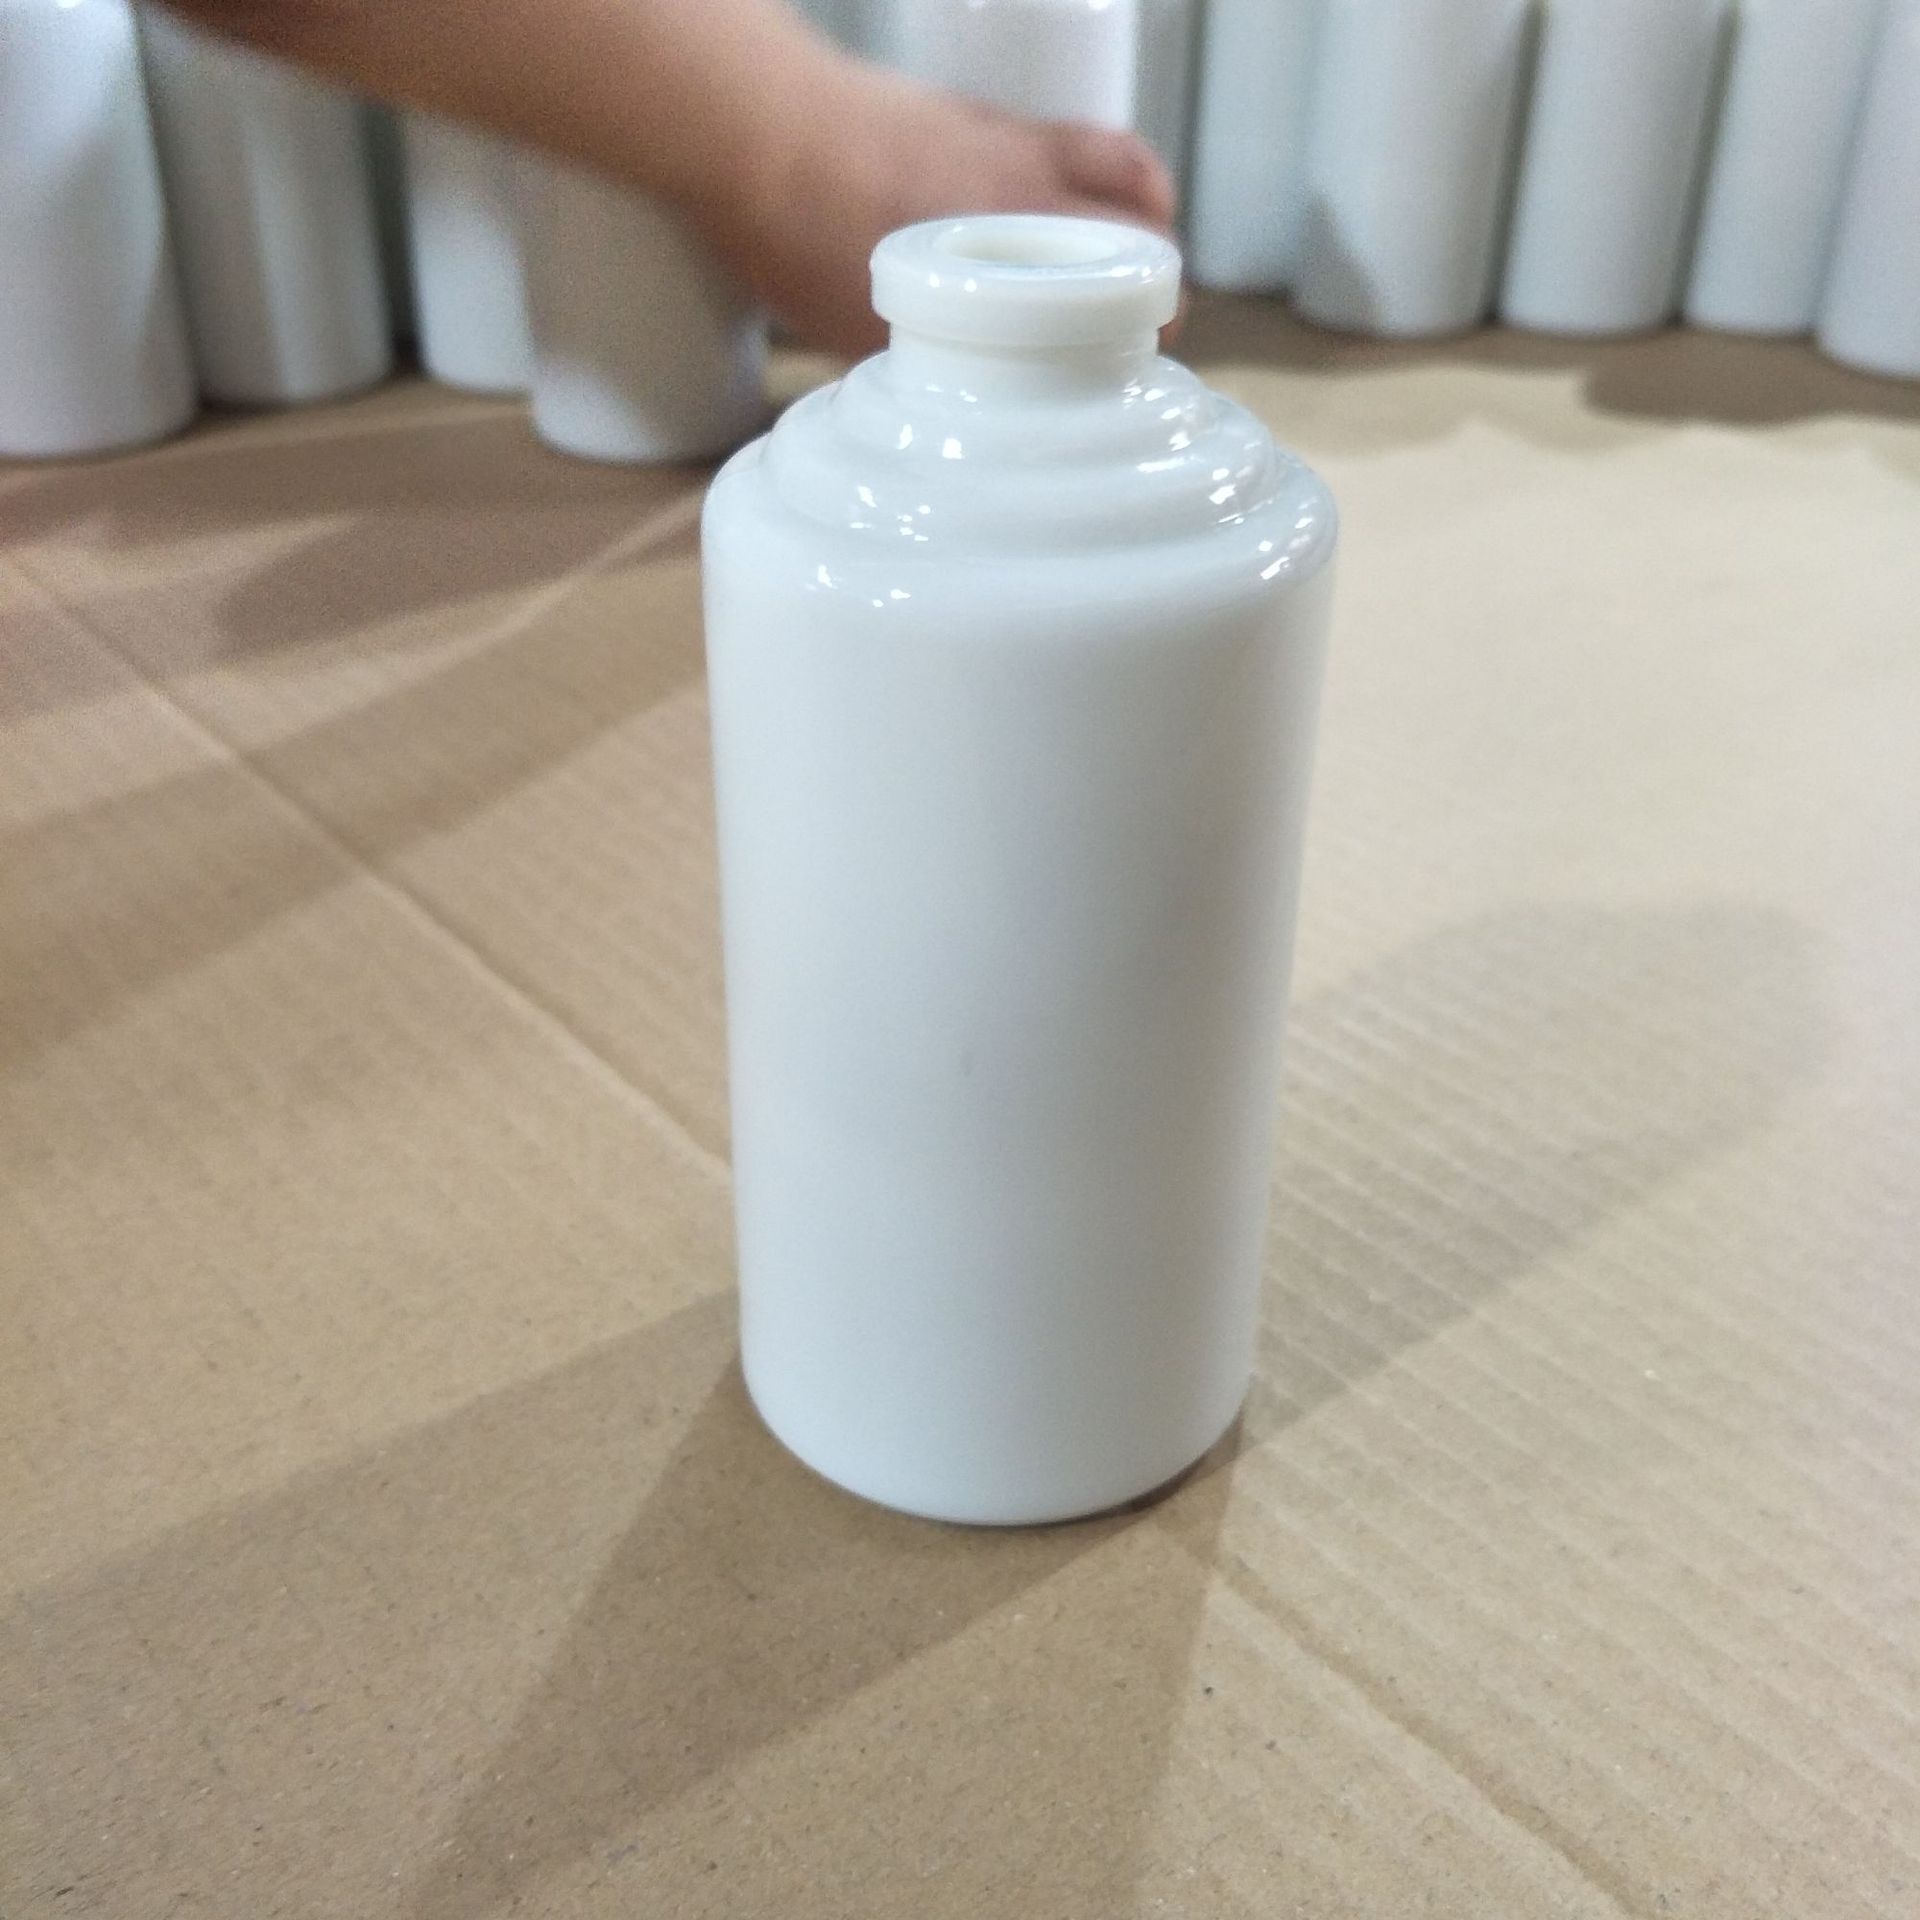 白色玻璃酒瓶乳白料玻璃瓶500ml 乳白 酒瓶 白瓷酒瓶订制示例图4